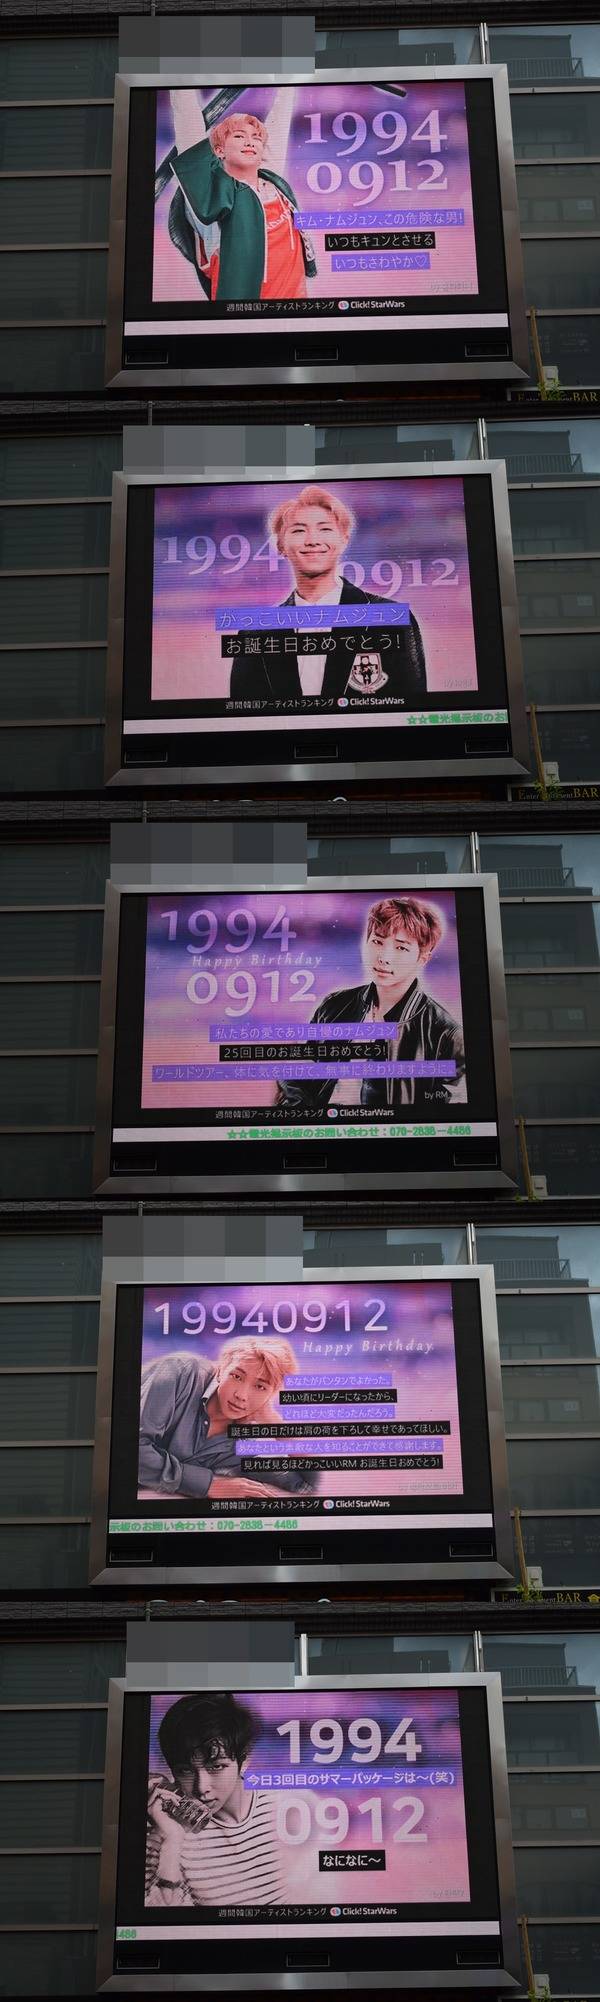 RM, 생일 축하해 12일 그룹 방탄소년단 RM의 생일을 맞아 일본 도쿄에 위치한 전광판에서 축하 영상이 상영 중이다. /클릭스타워즈